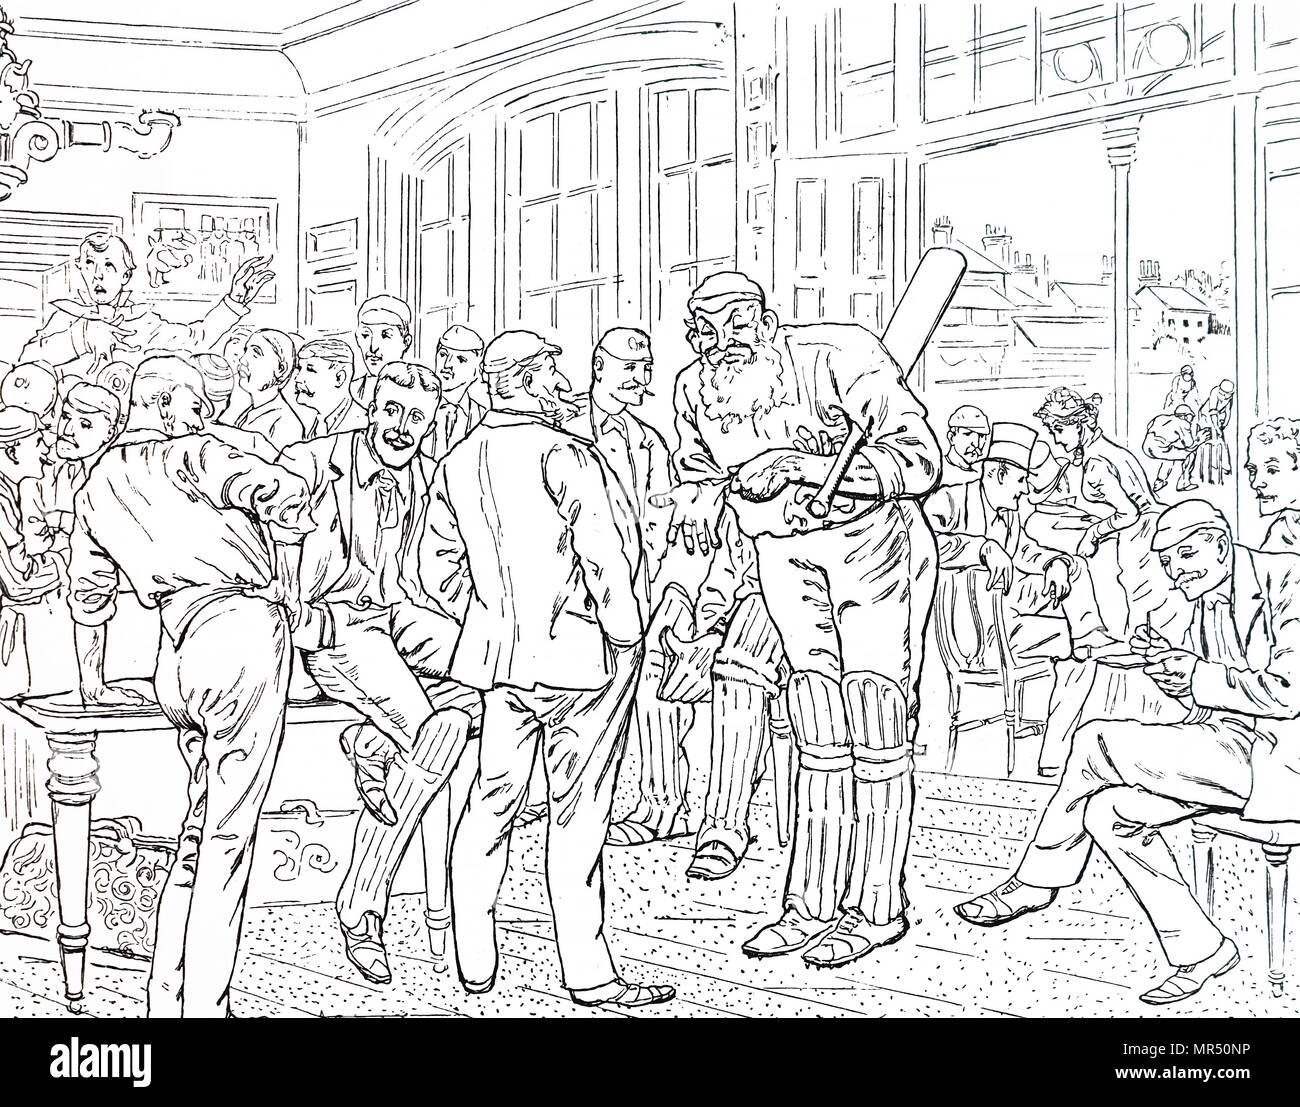 Illustration représentant le pavillon à Lord's Cricket Ground à la fin de la saison, dominé par la figure de barbus W. G. grâce avec d'autres éminents joueurs autour de lui. Illustré par Harry Furniss (1854-1925) un artiste anglais, né en Irlande et de l'illustrateur. En date du 19e siècle Banque D'Images